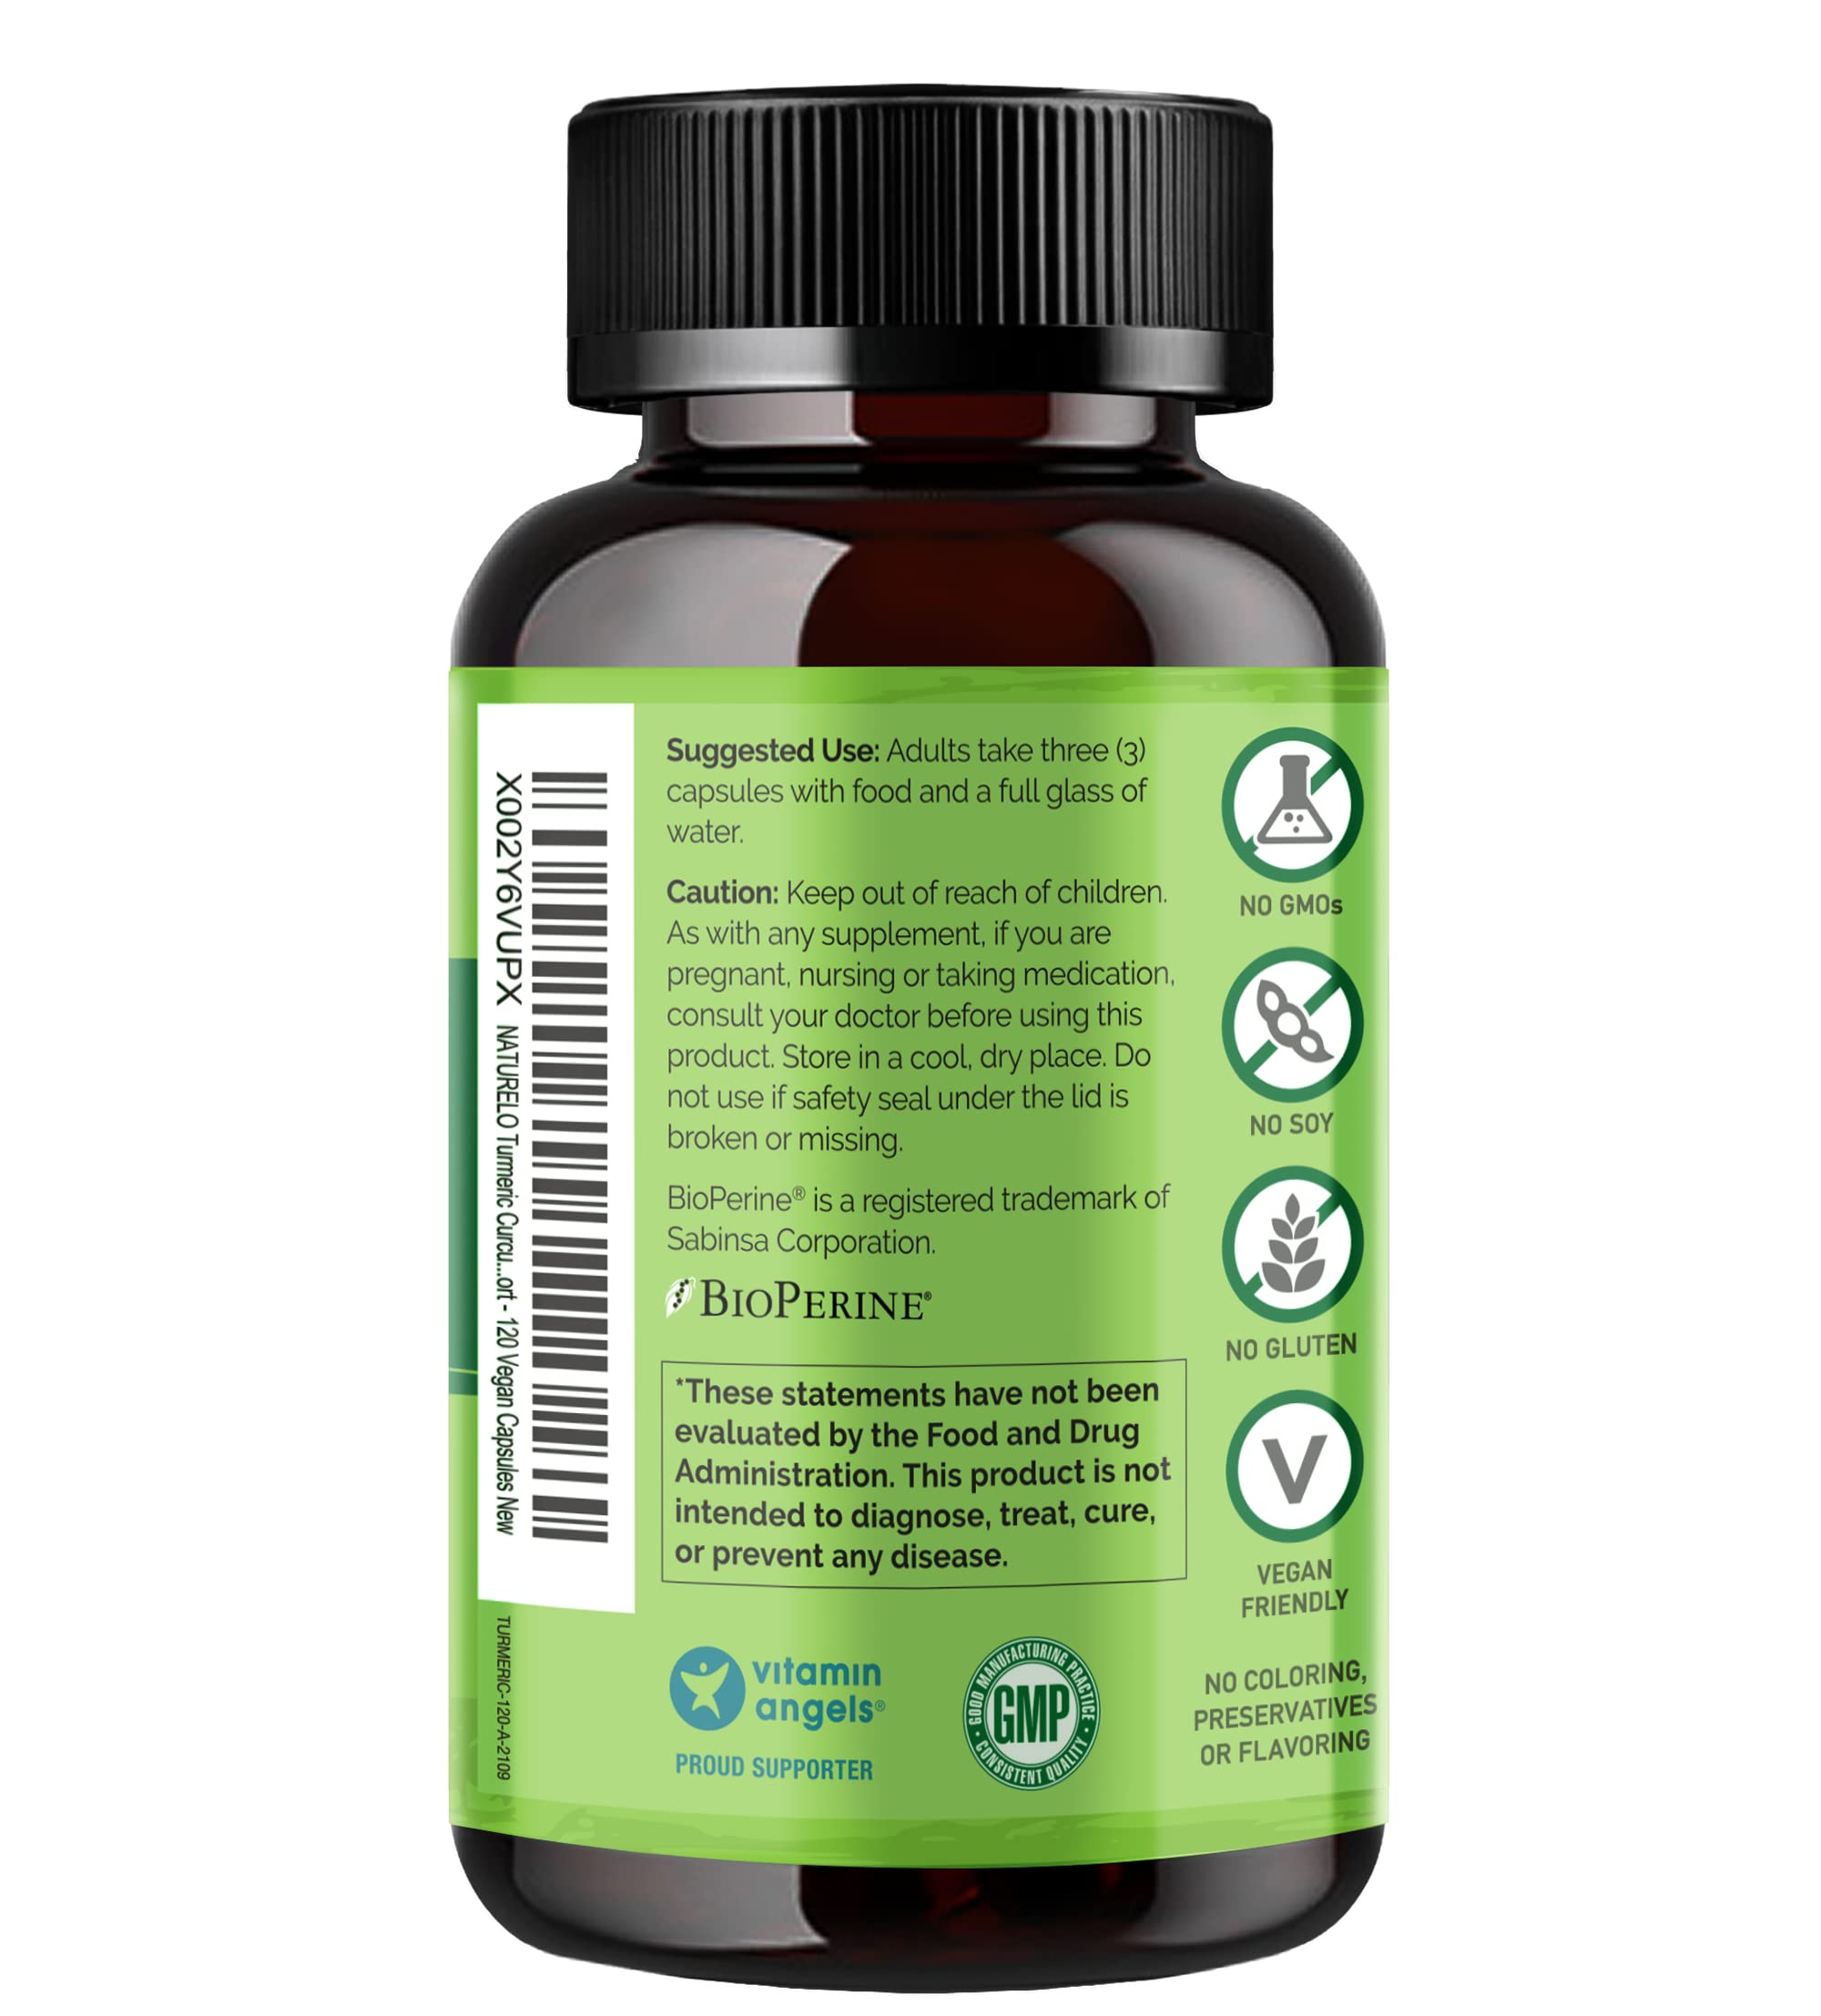 NATURELO Tumeric Curcumin, Plant Based Joint Support, Magnesium Glycinate, 200 mg Magnesium - Gluten Free, Non GMO - 120 Capsules